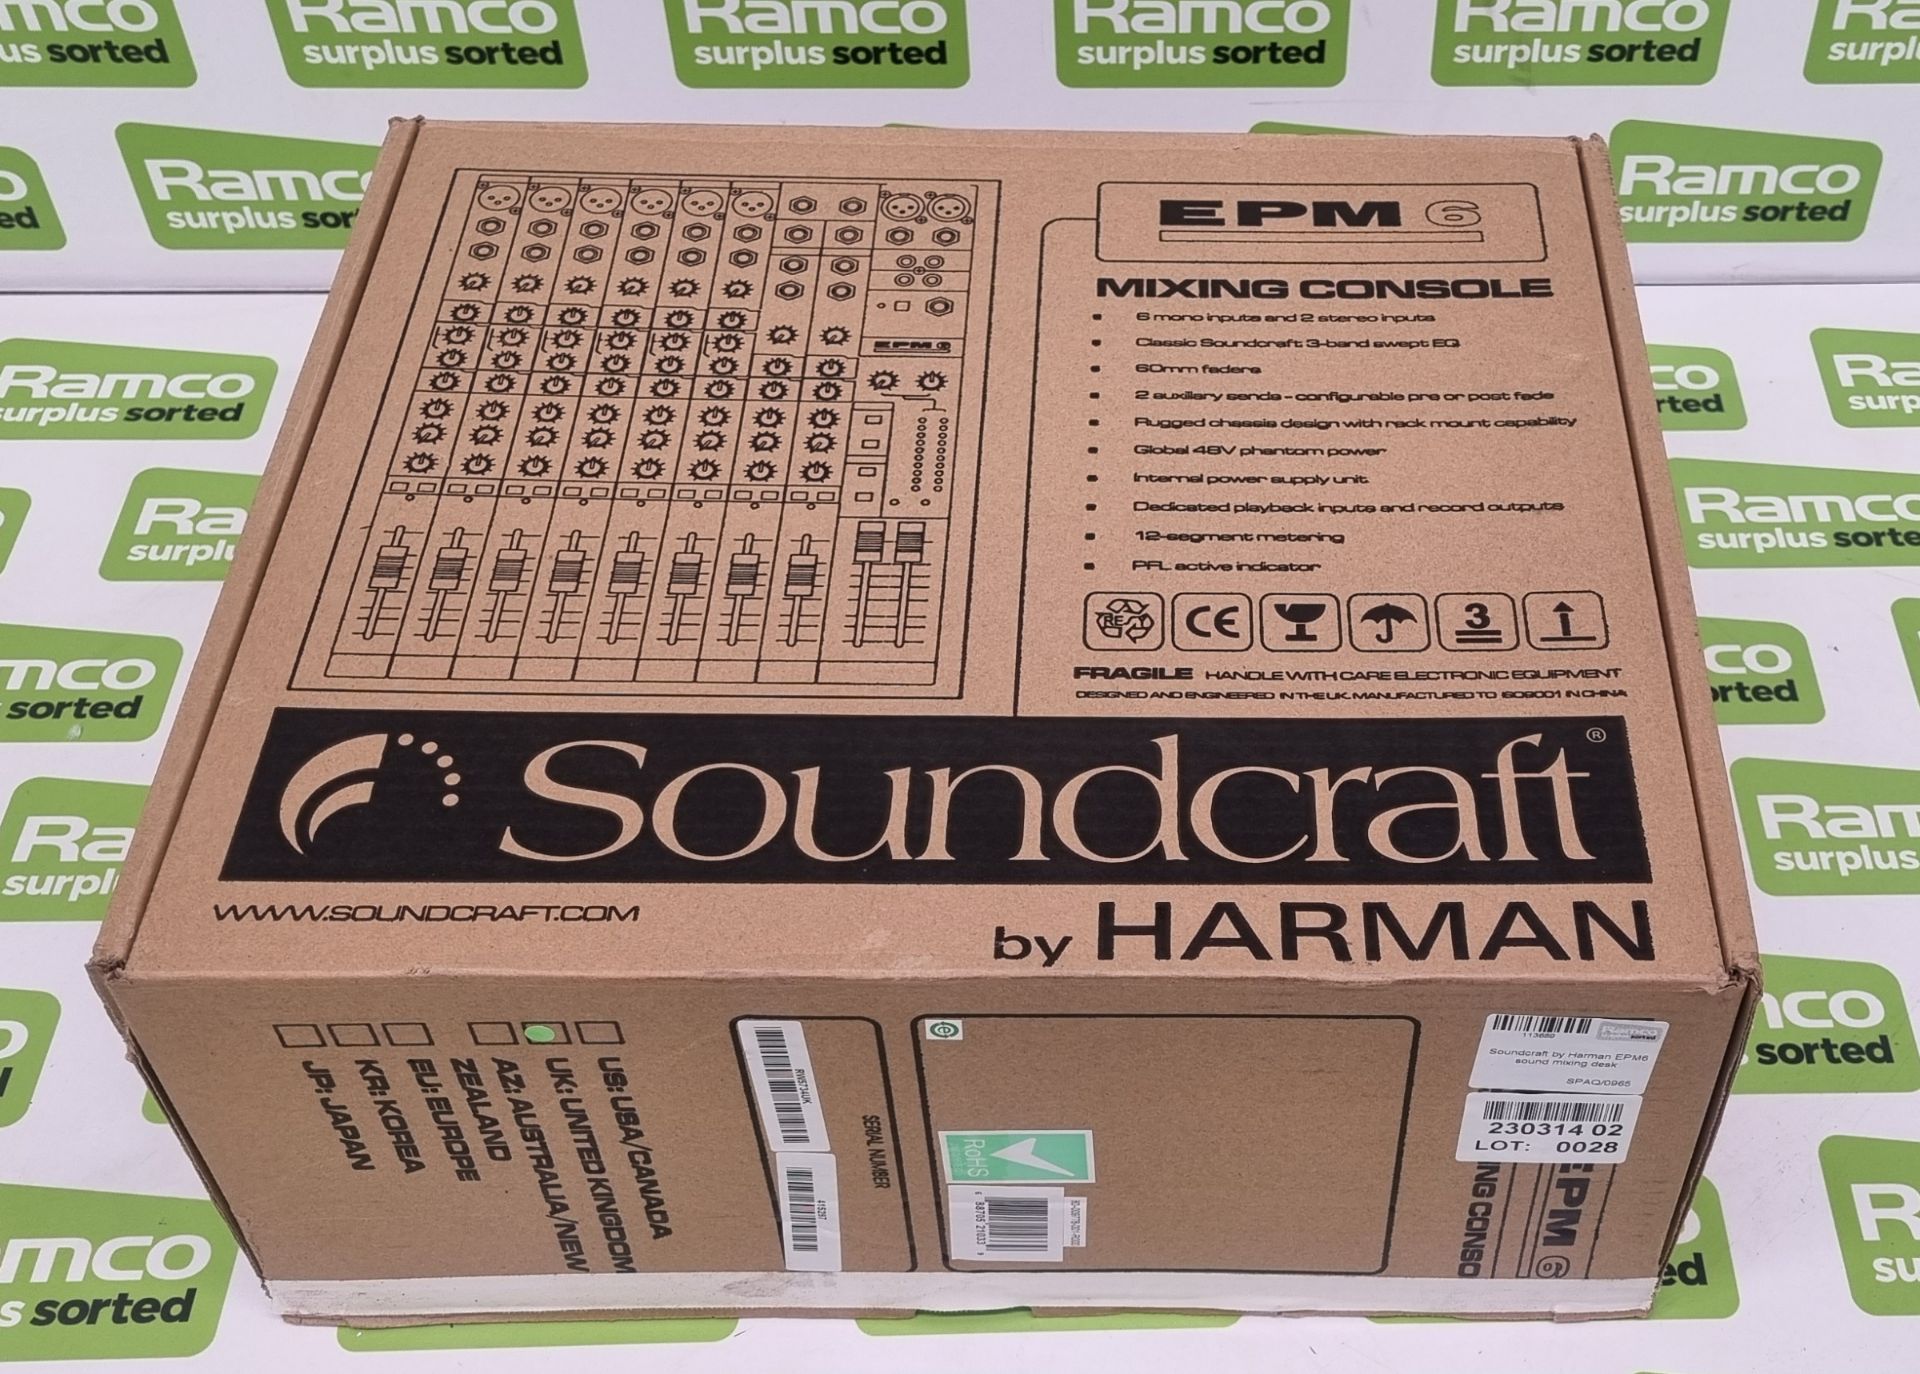 Soundcraft by Harman EPM6 sound mixing desk